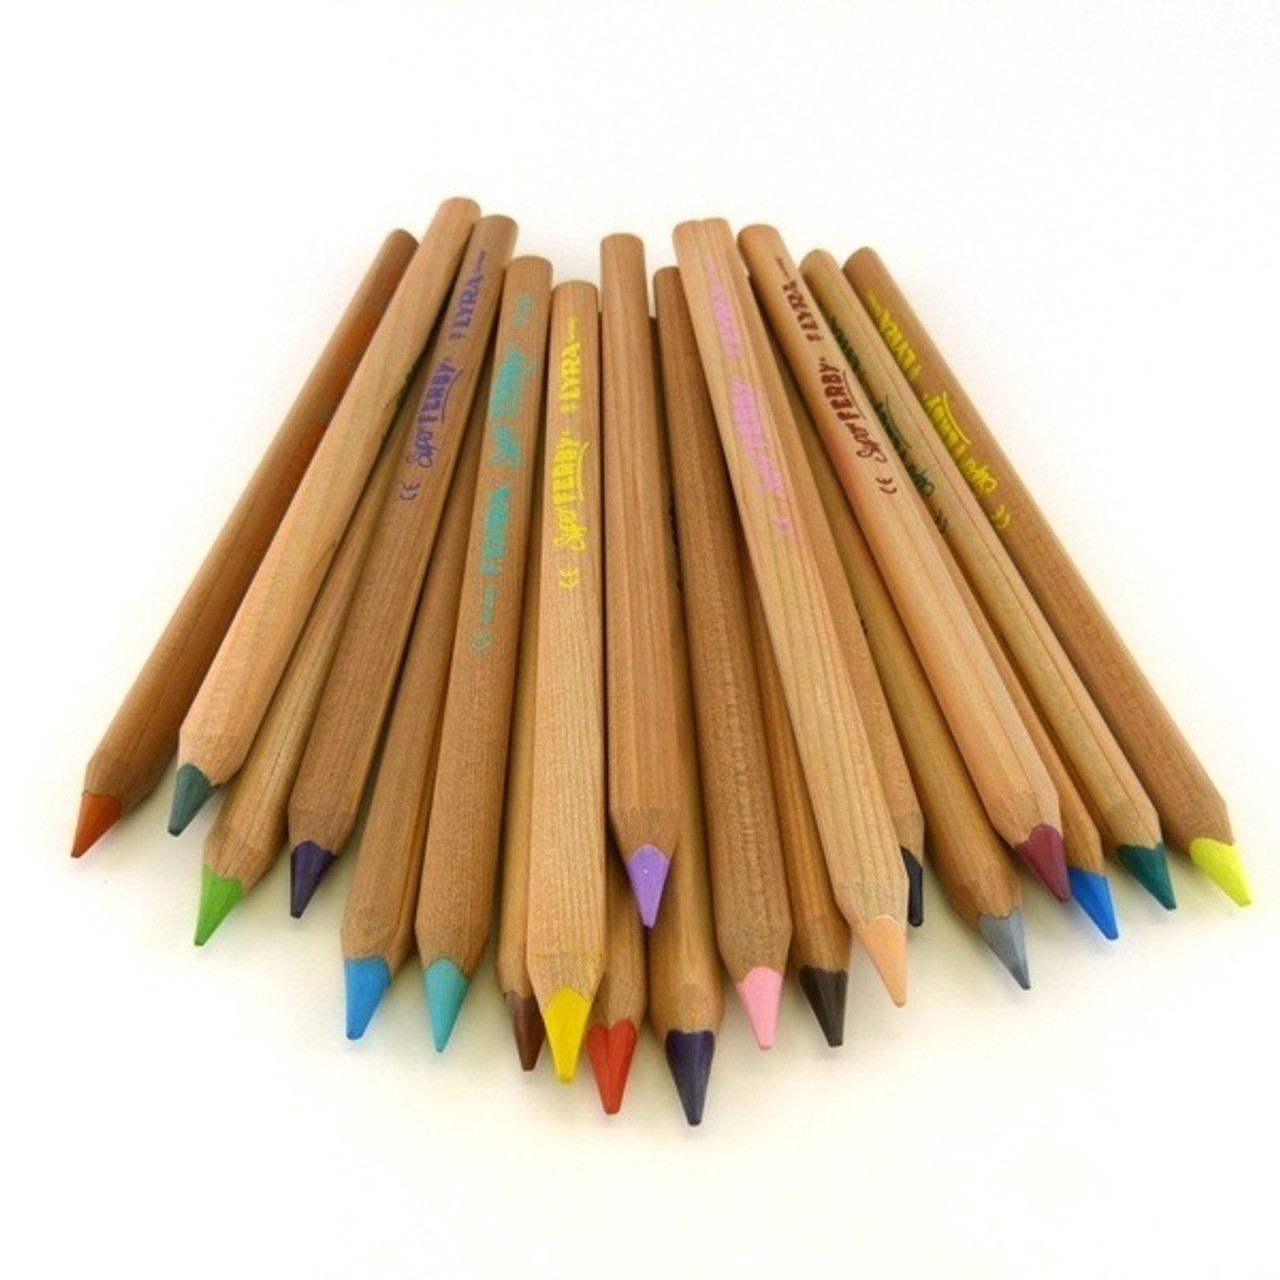 Lyra Super Ferby Neon Colored Pencils - Alder & Alouette